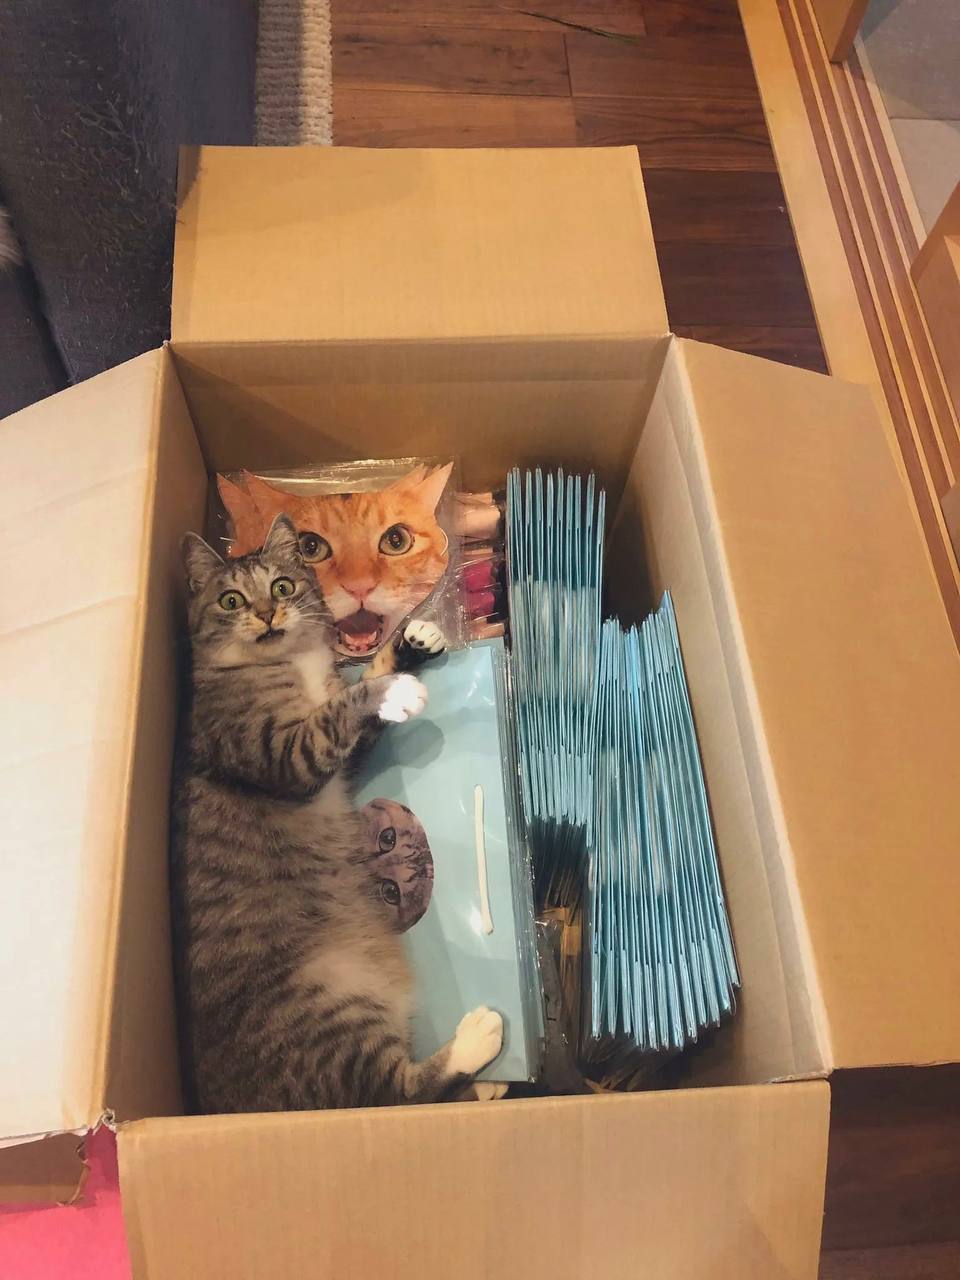 "Заказали коробку всякого мерча с котиками, на продажу. Наш кот в шоке!"